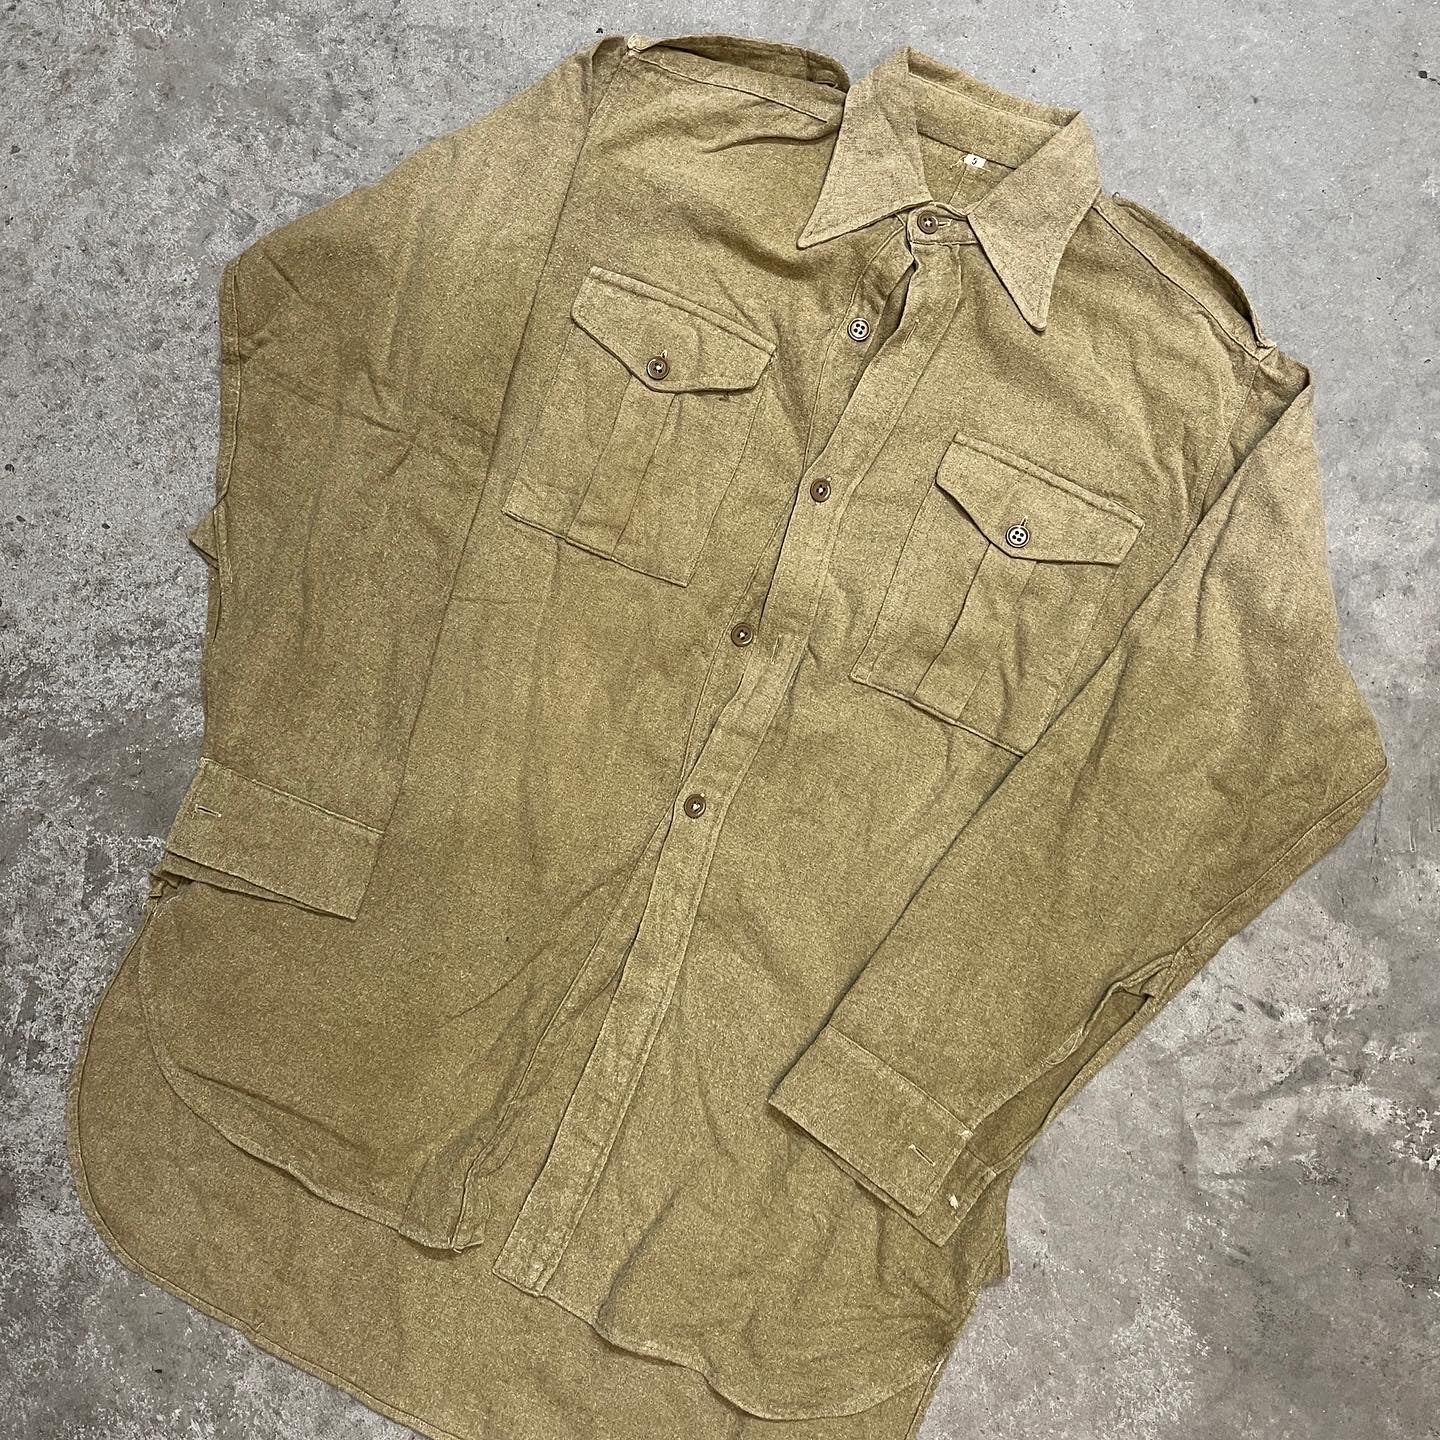 WW2 British Army Woolen Shirt